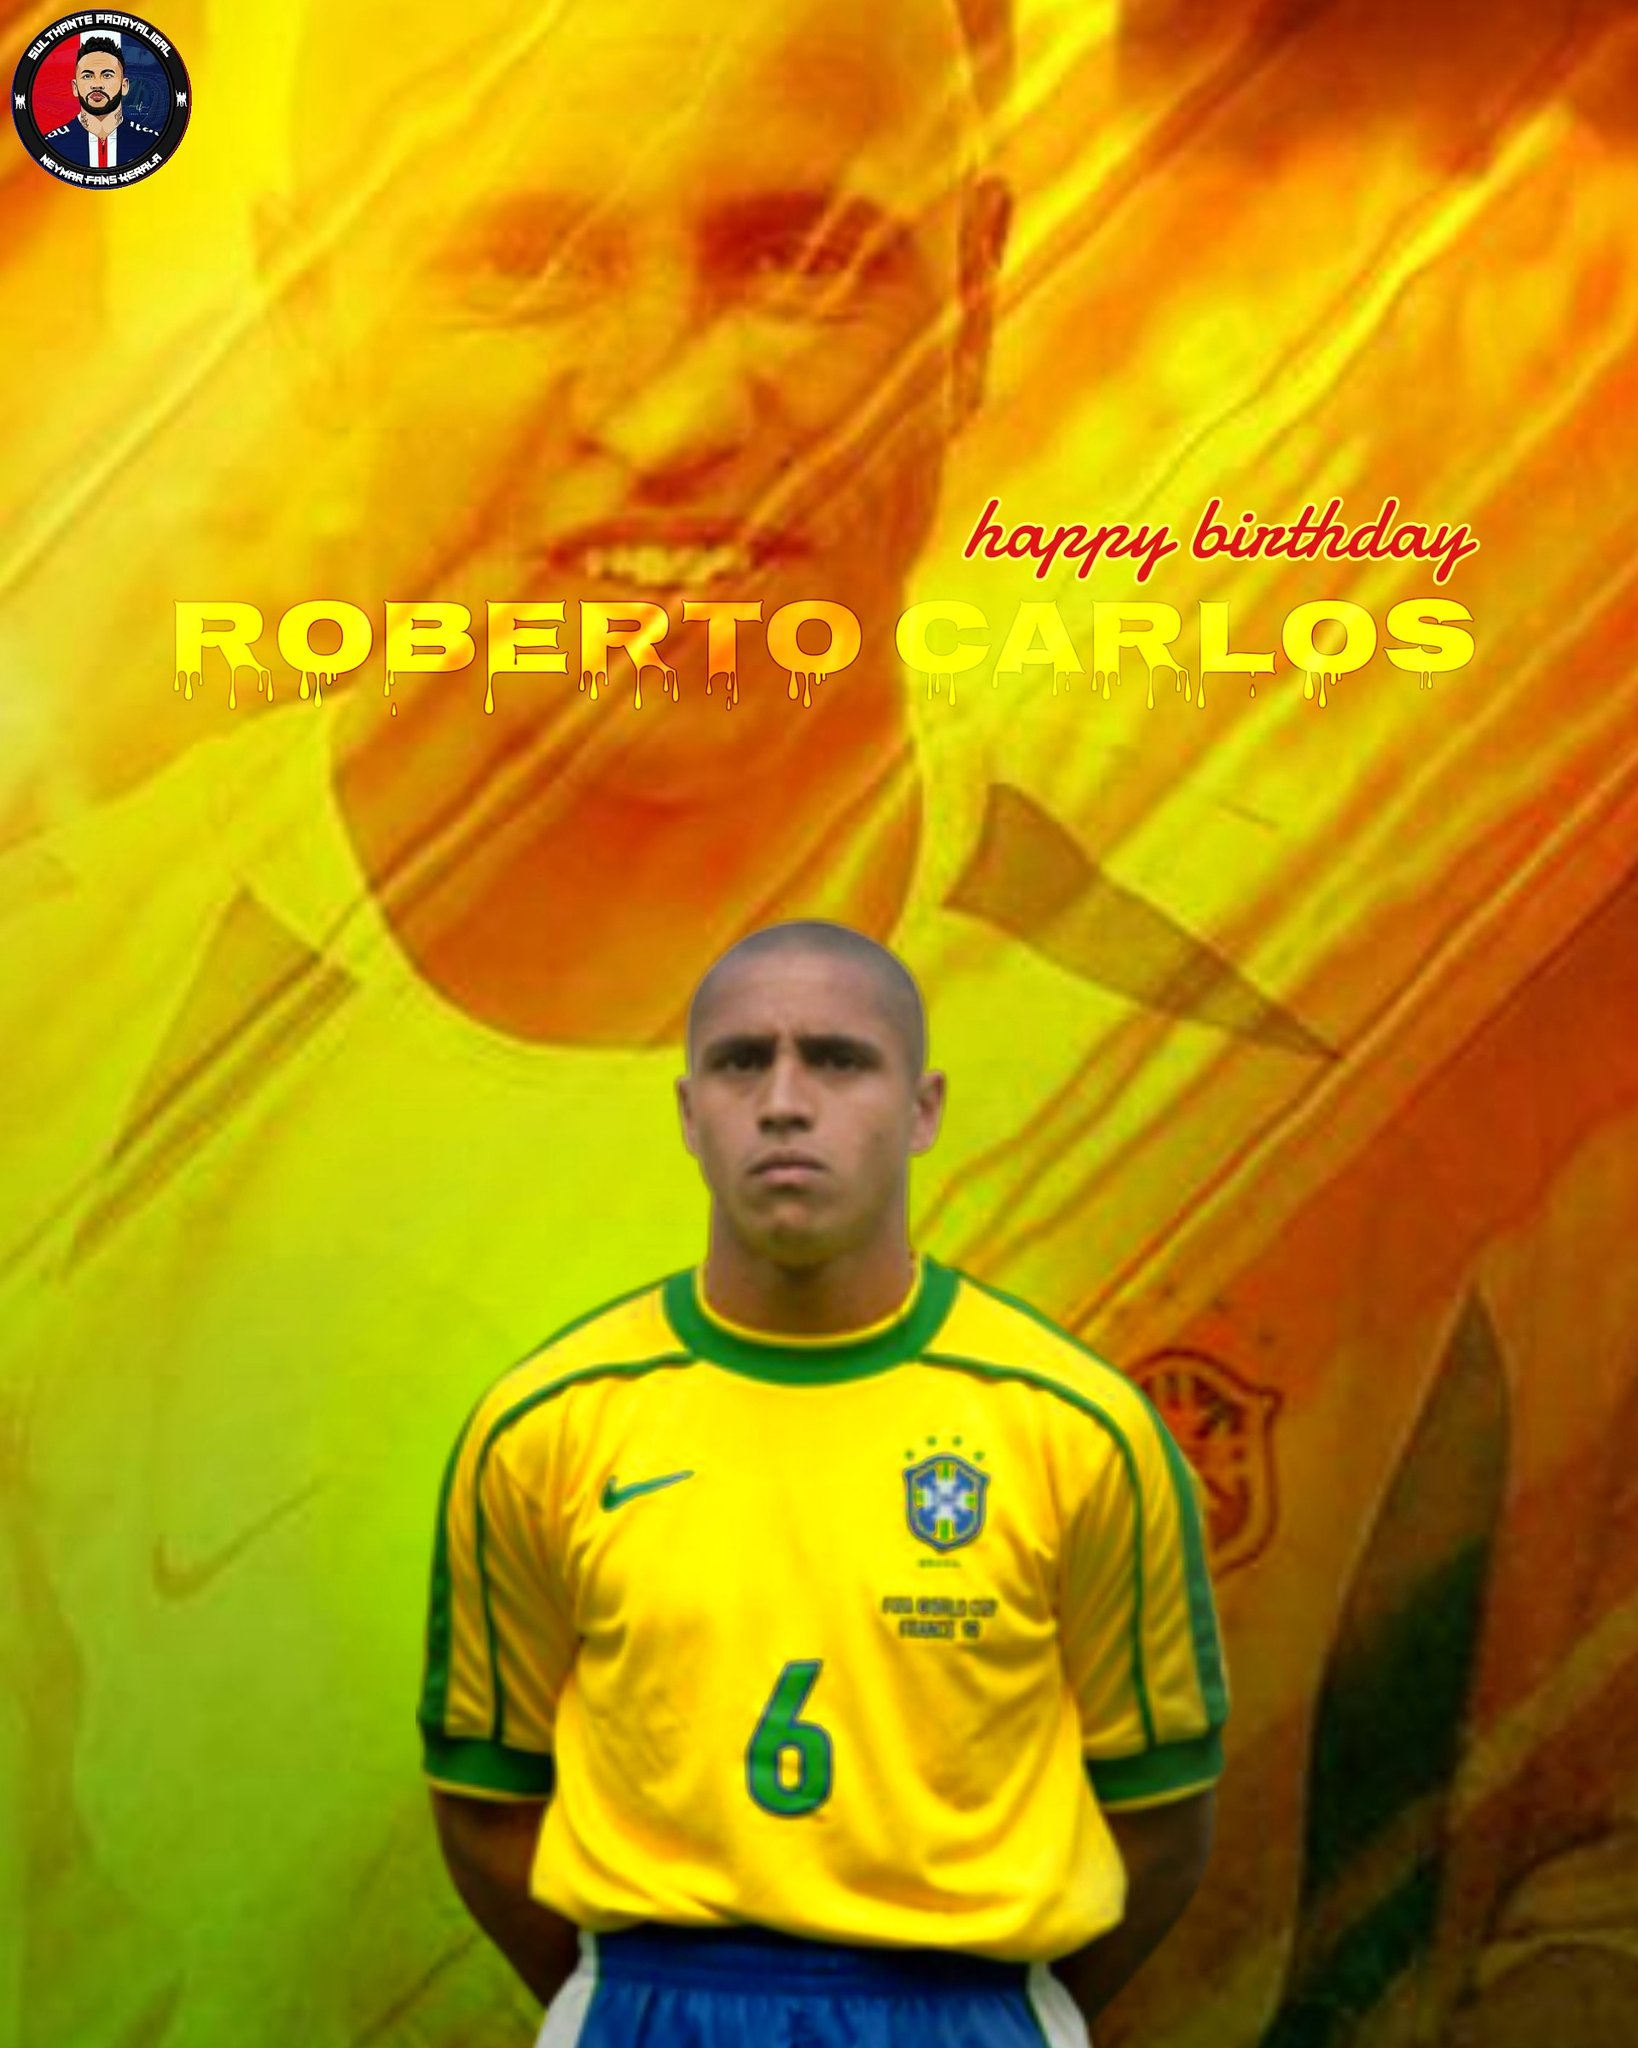 HAPPY BIRTHDAY LEGEND ROBERTO CARLOS     